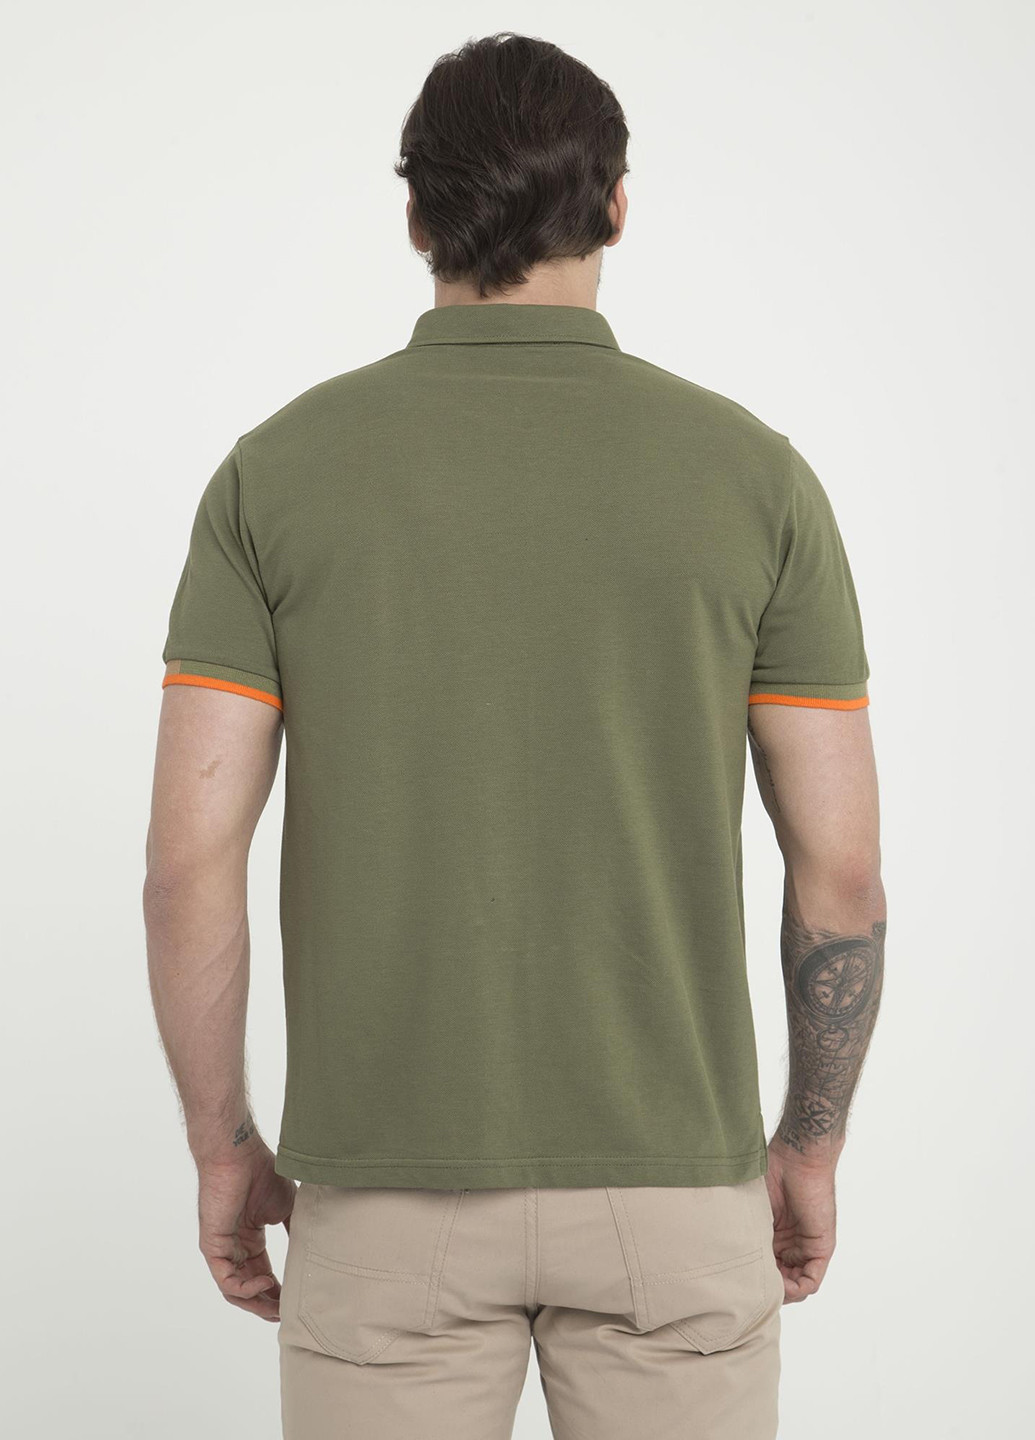 Оливковая (хаки) футболка-поло для мужчин SIR RAYMOND TAILOR однотонная